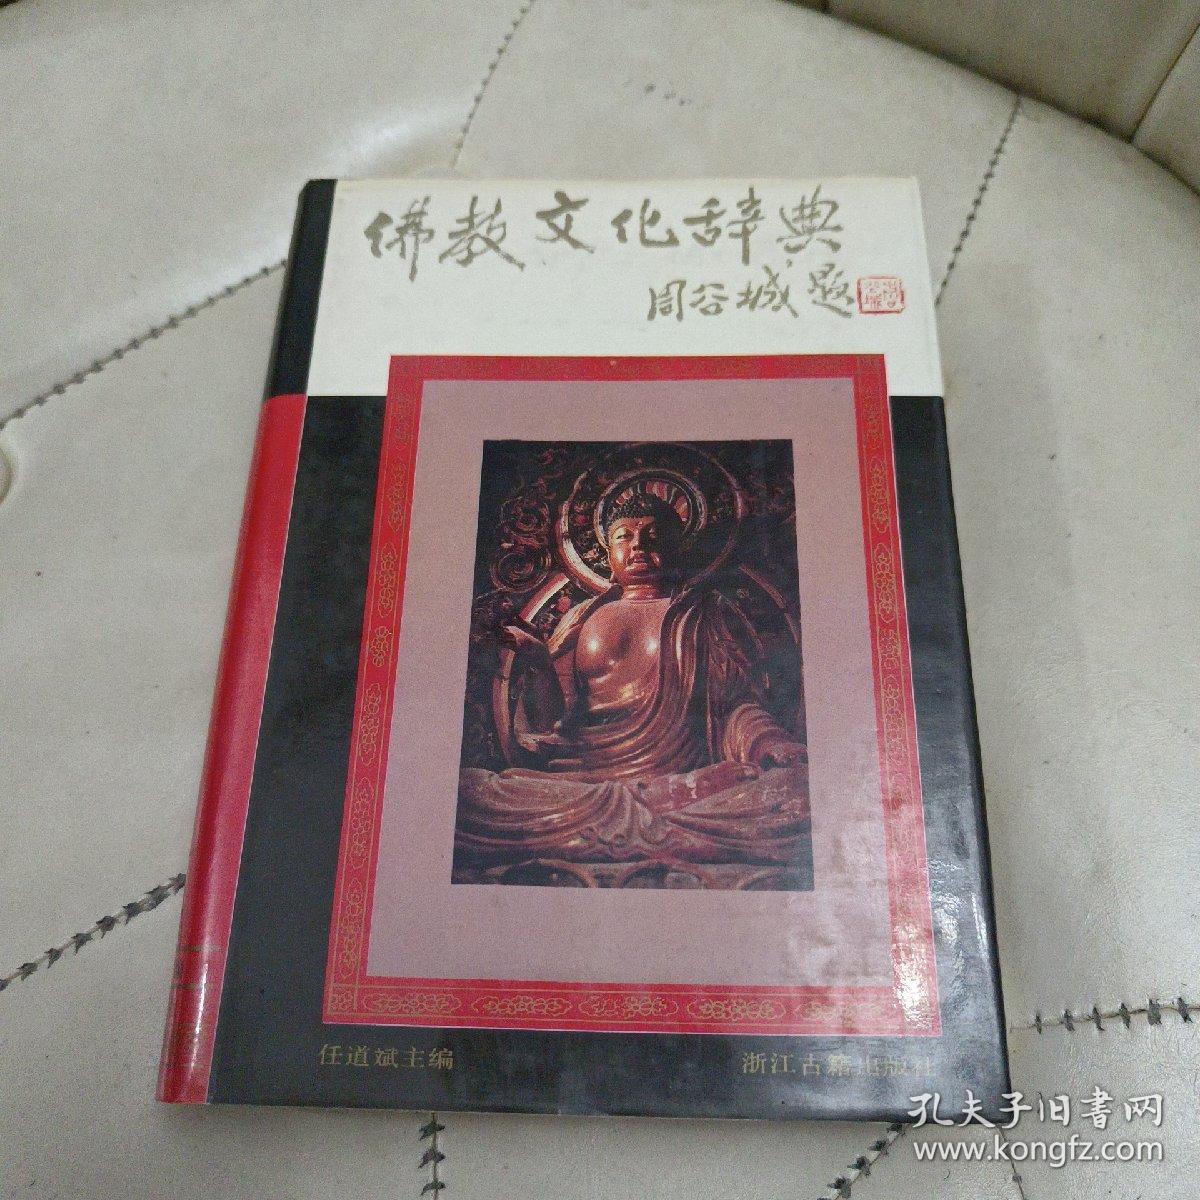 佛教文化辞典